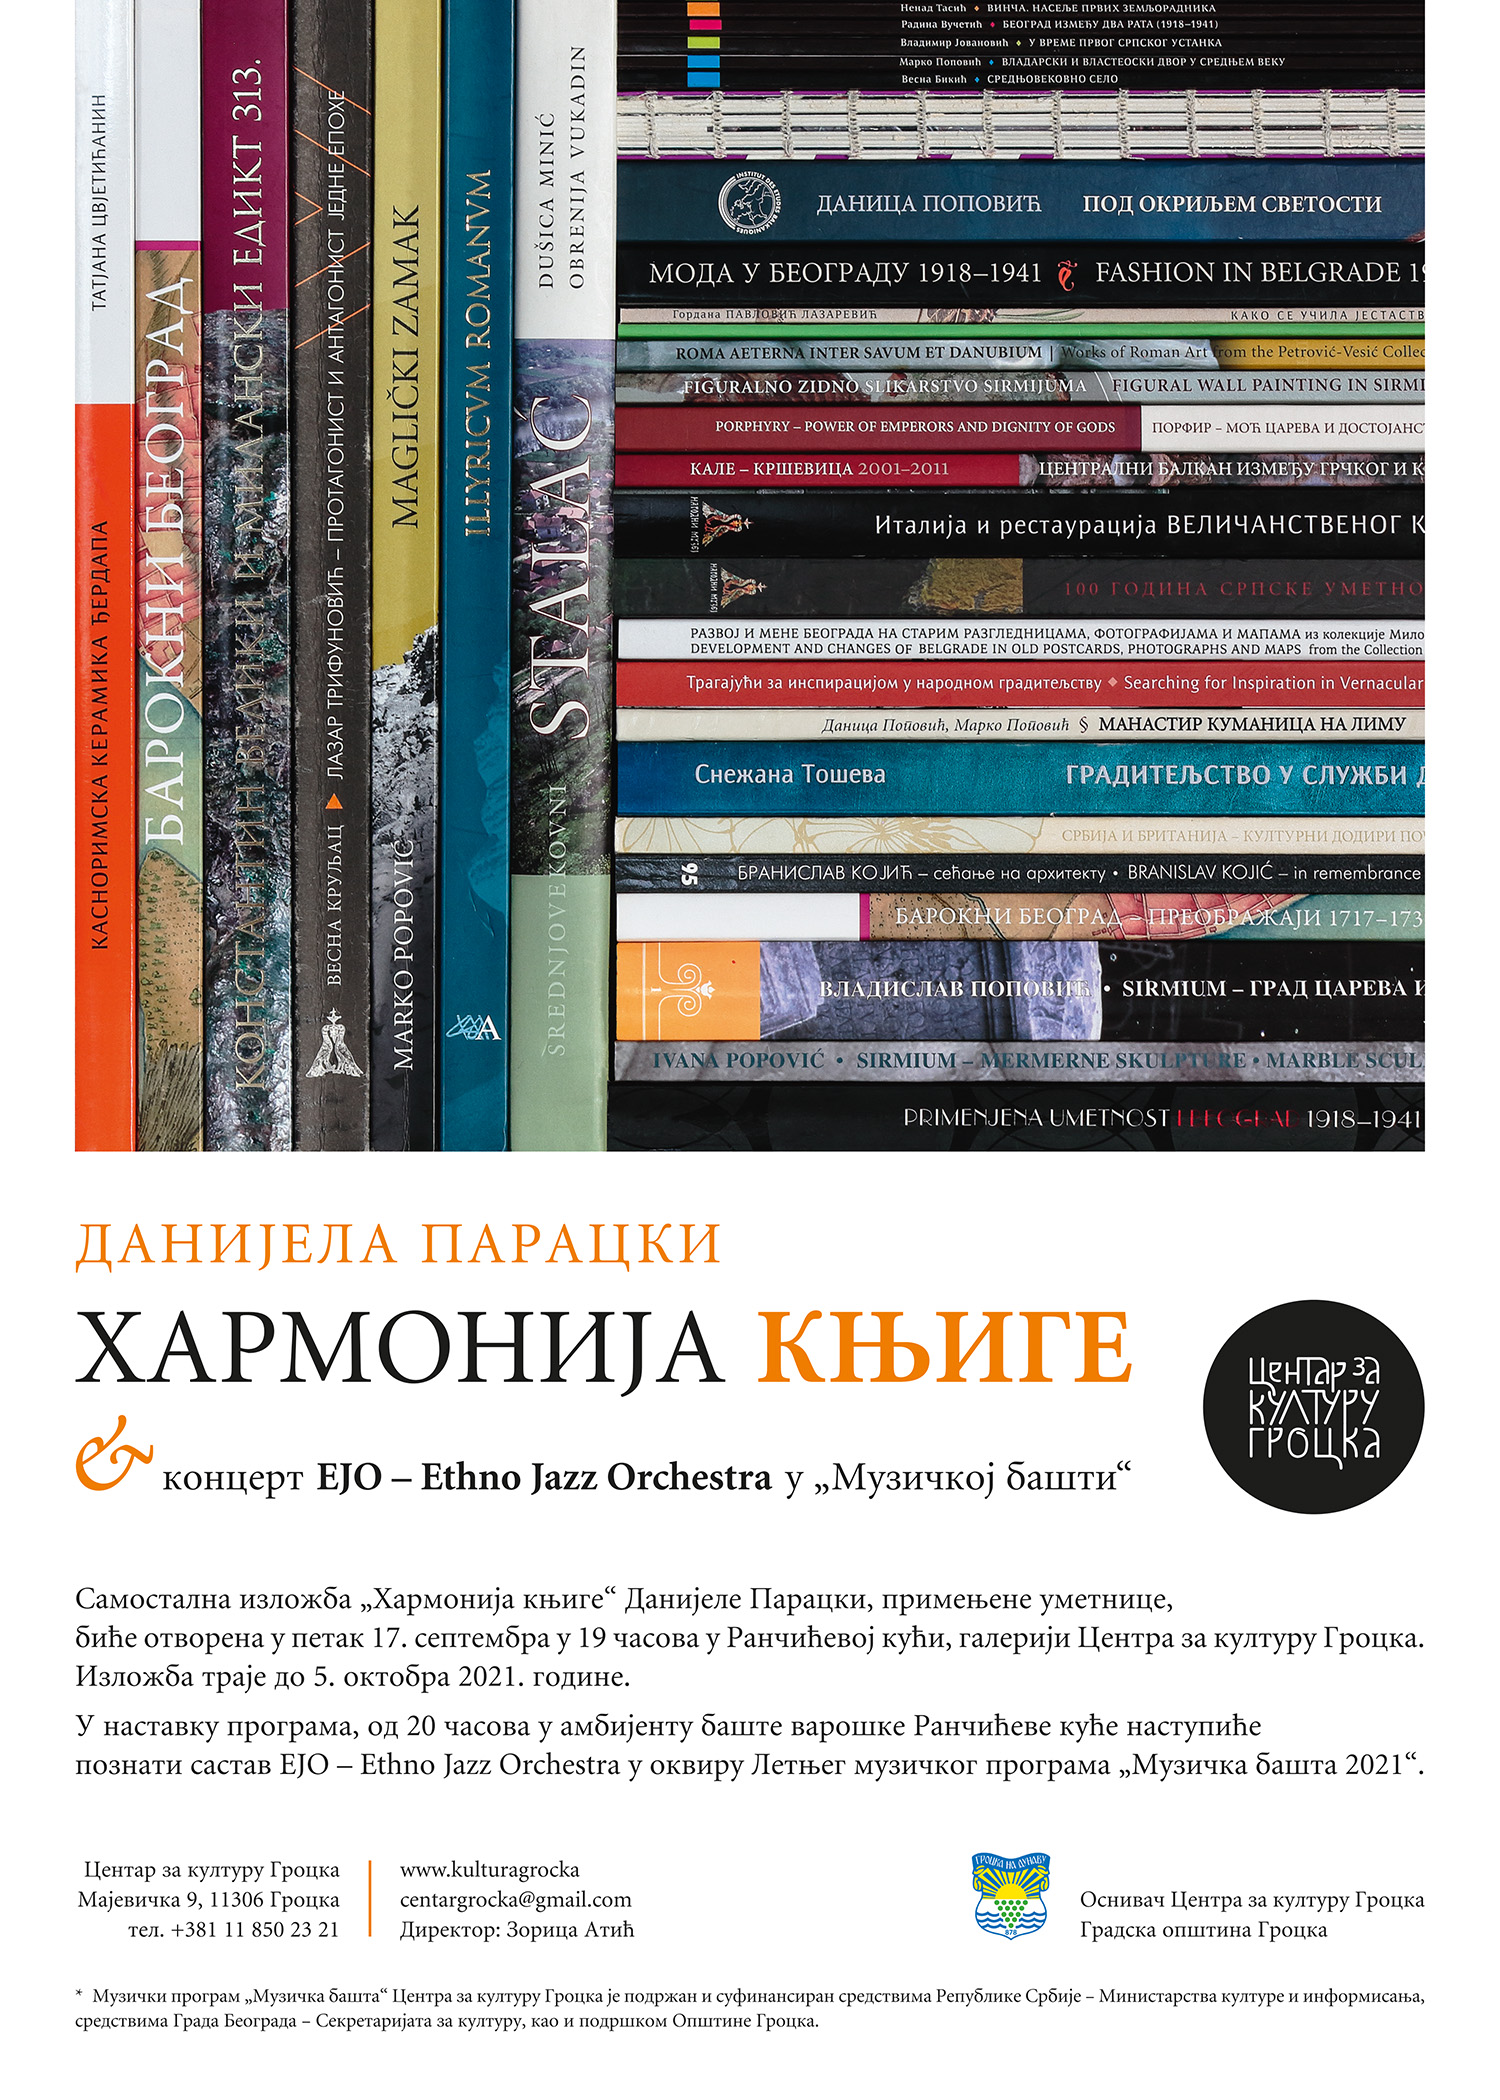 Изложба „ХармониЈА = књиге“  Данијеле Парацки & концерт EJO / Ethno Jazz Orchestra у „Музичкoj башти“ 